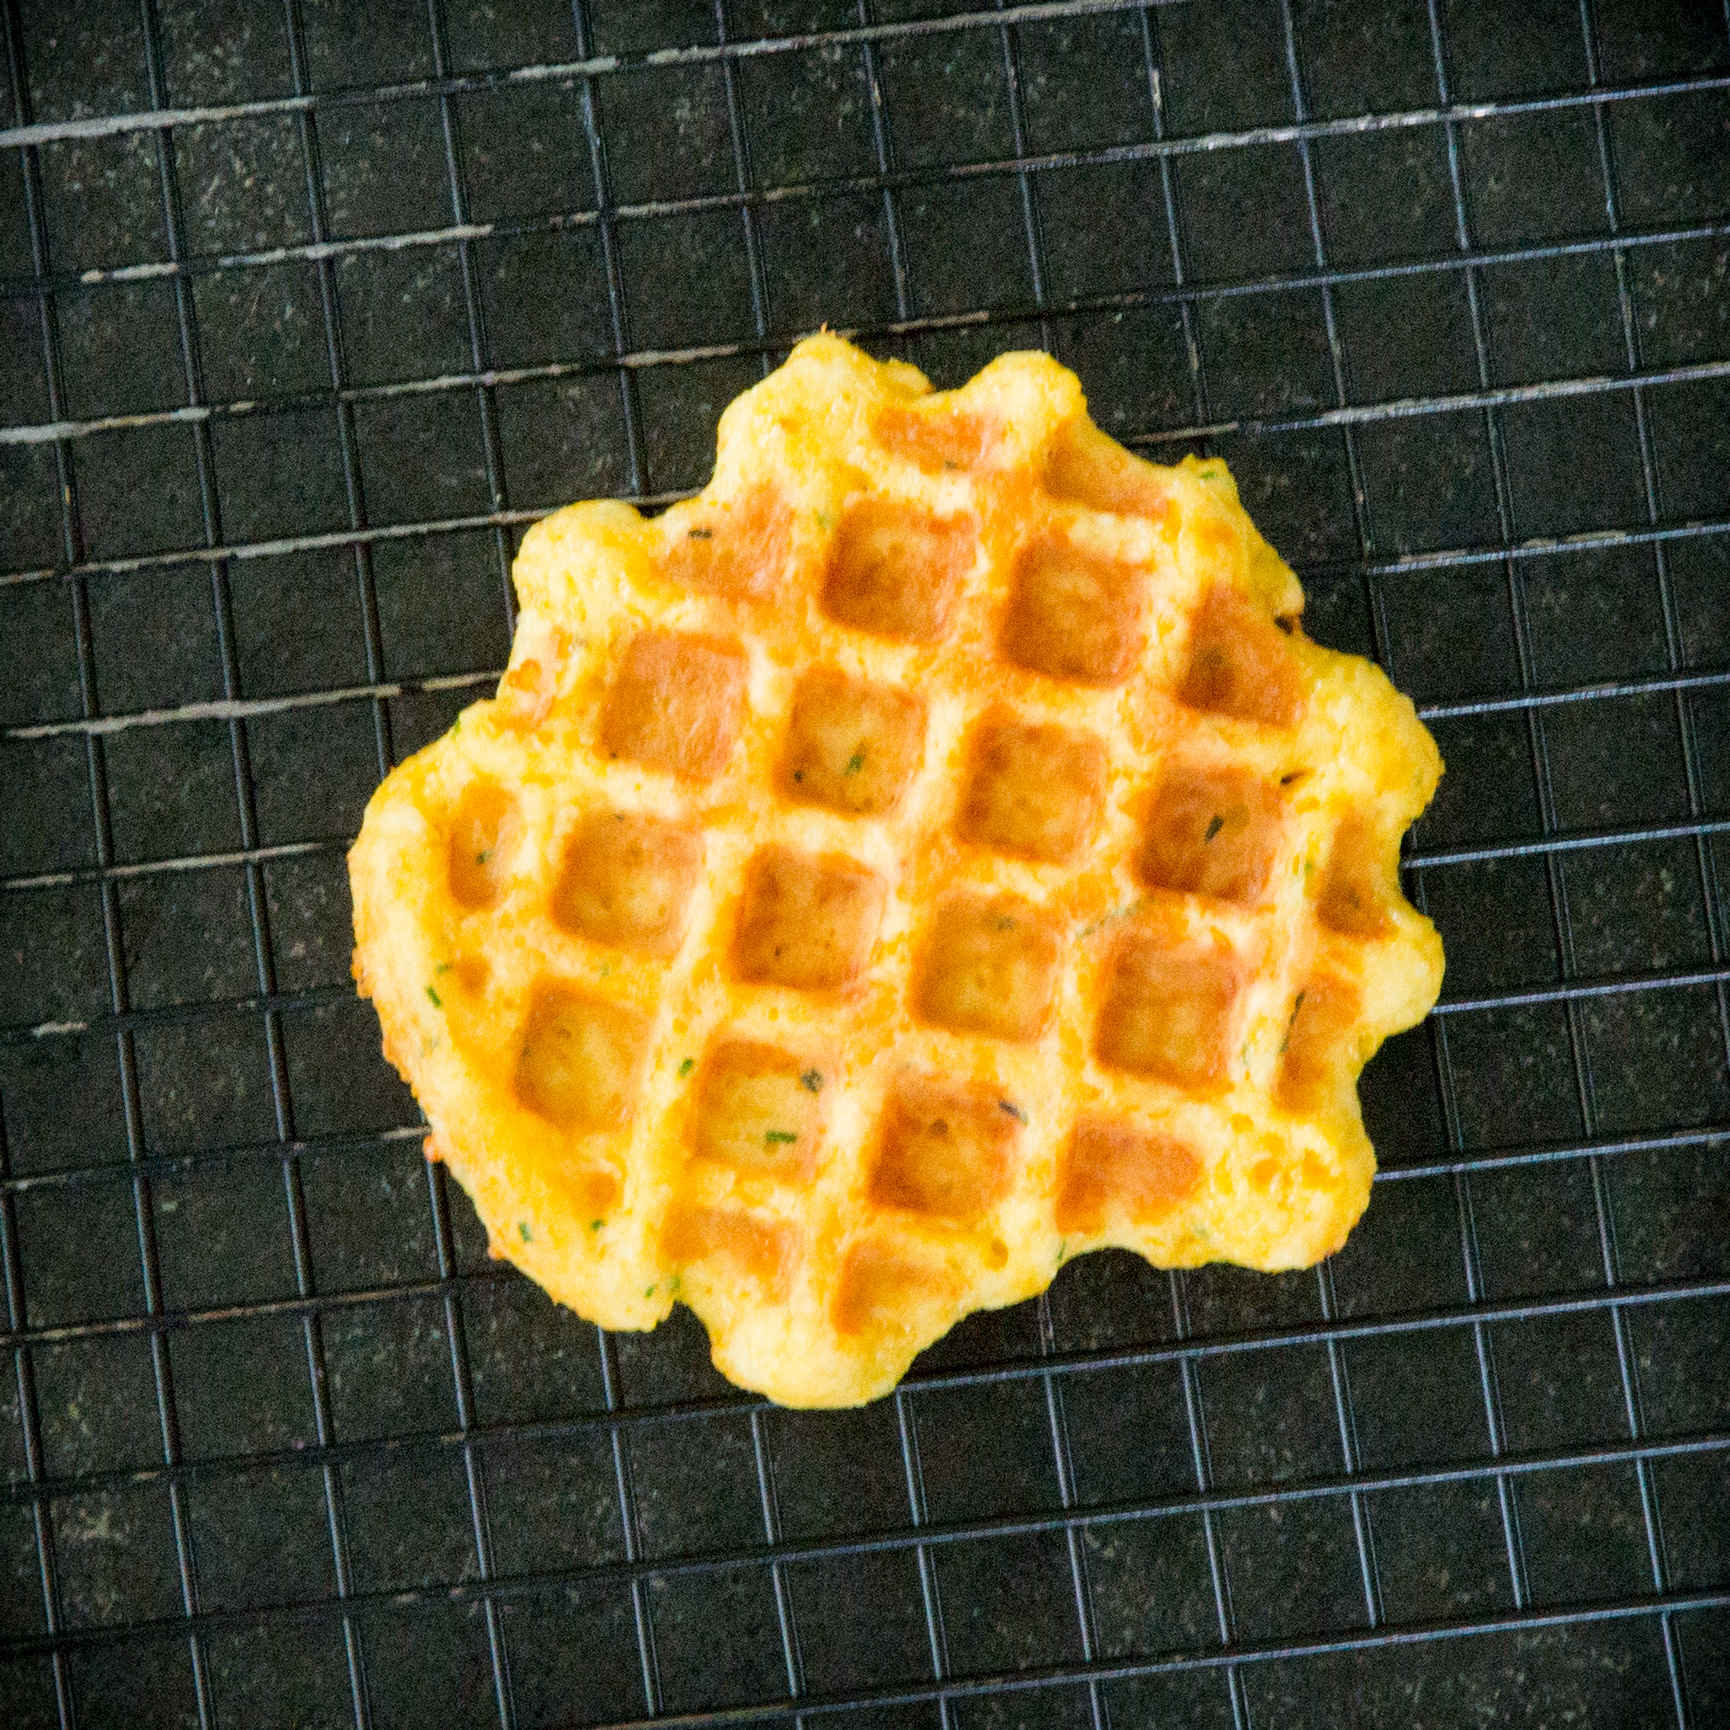 Savory Cheesy Waffle aka a Chaffle – Cabot Creamery